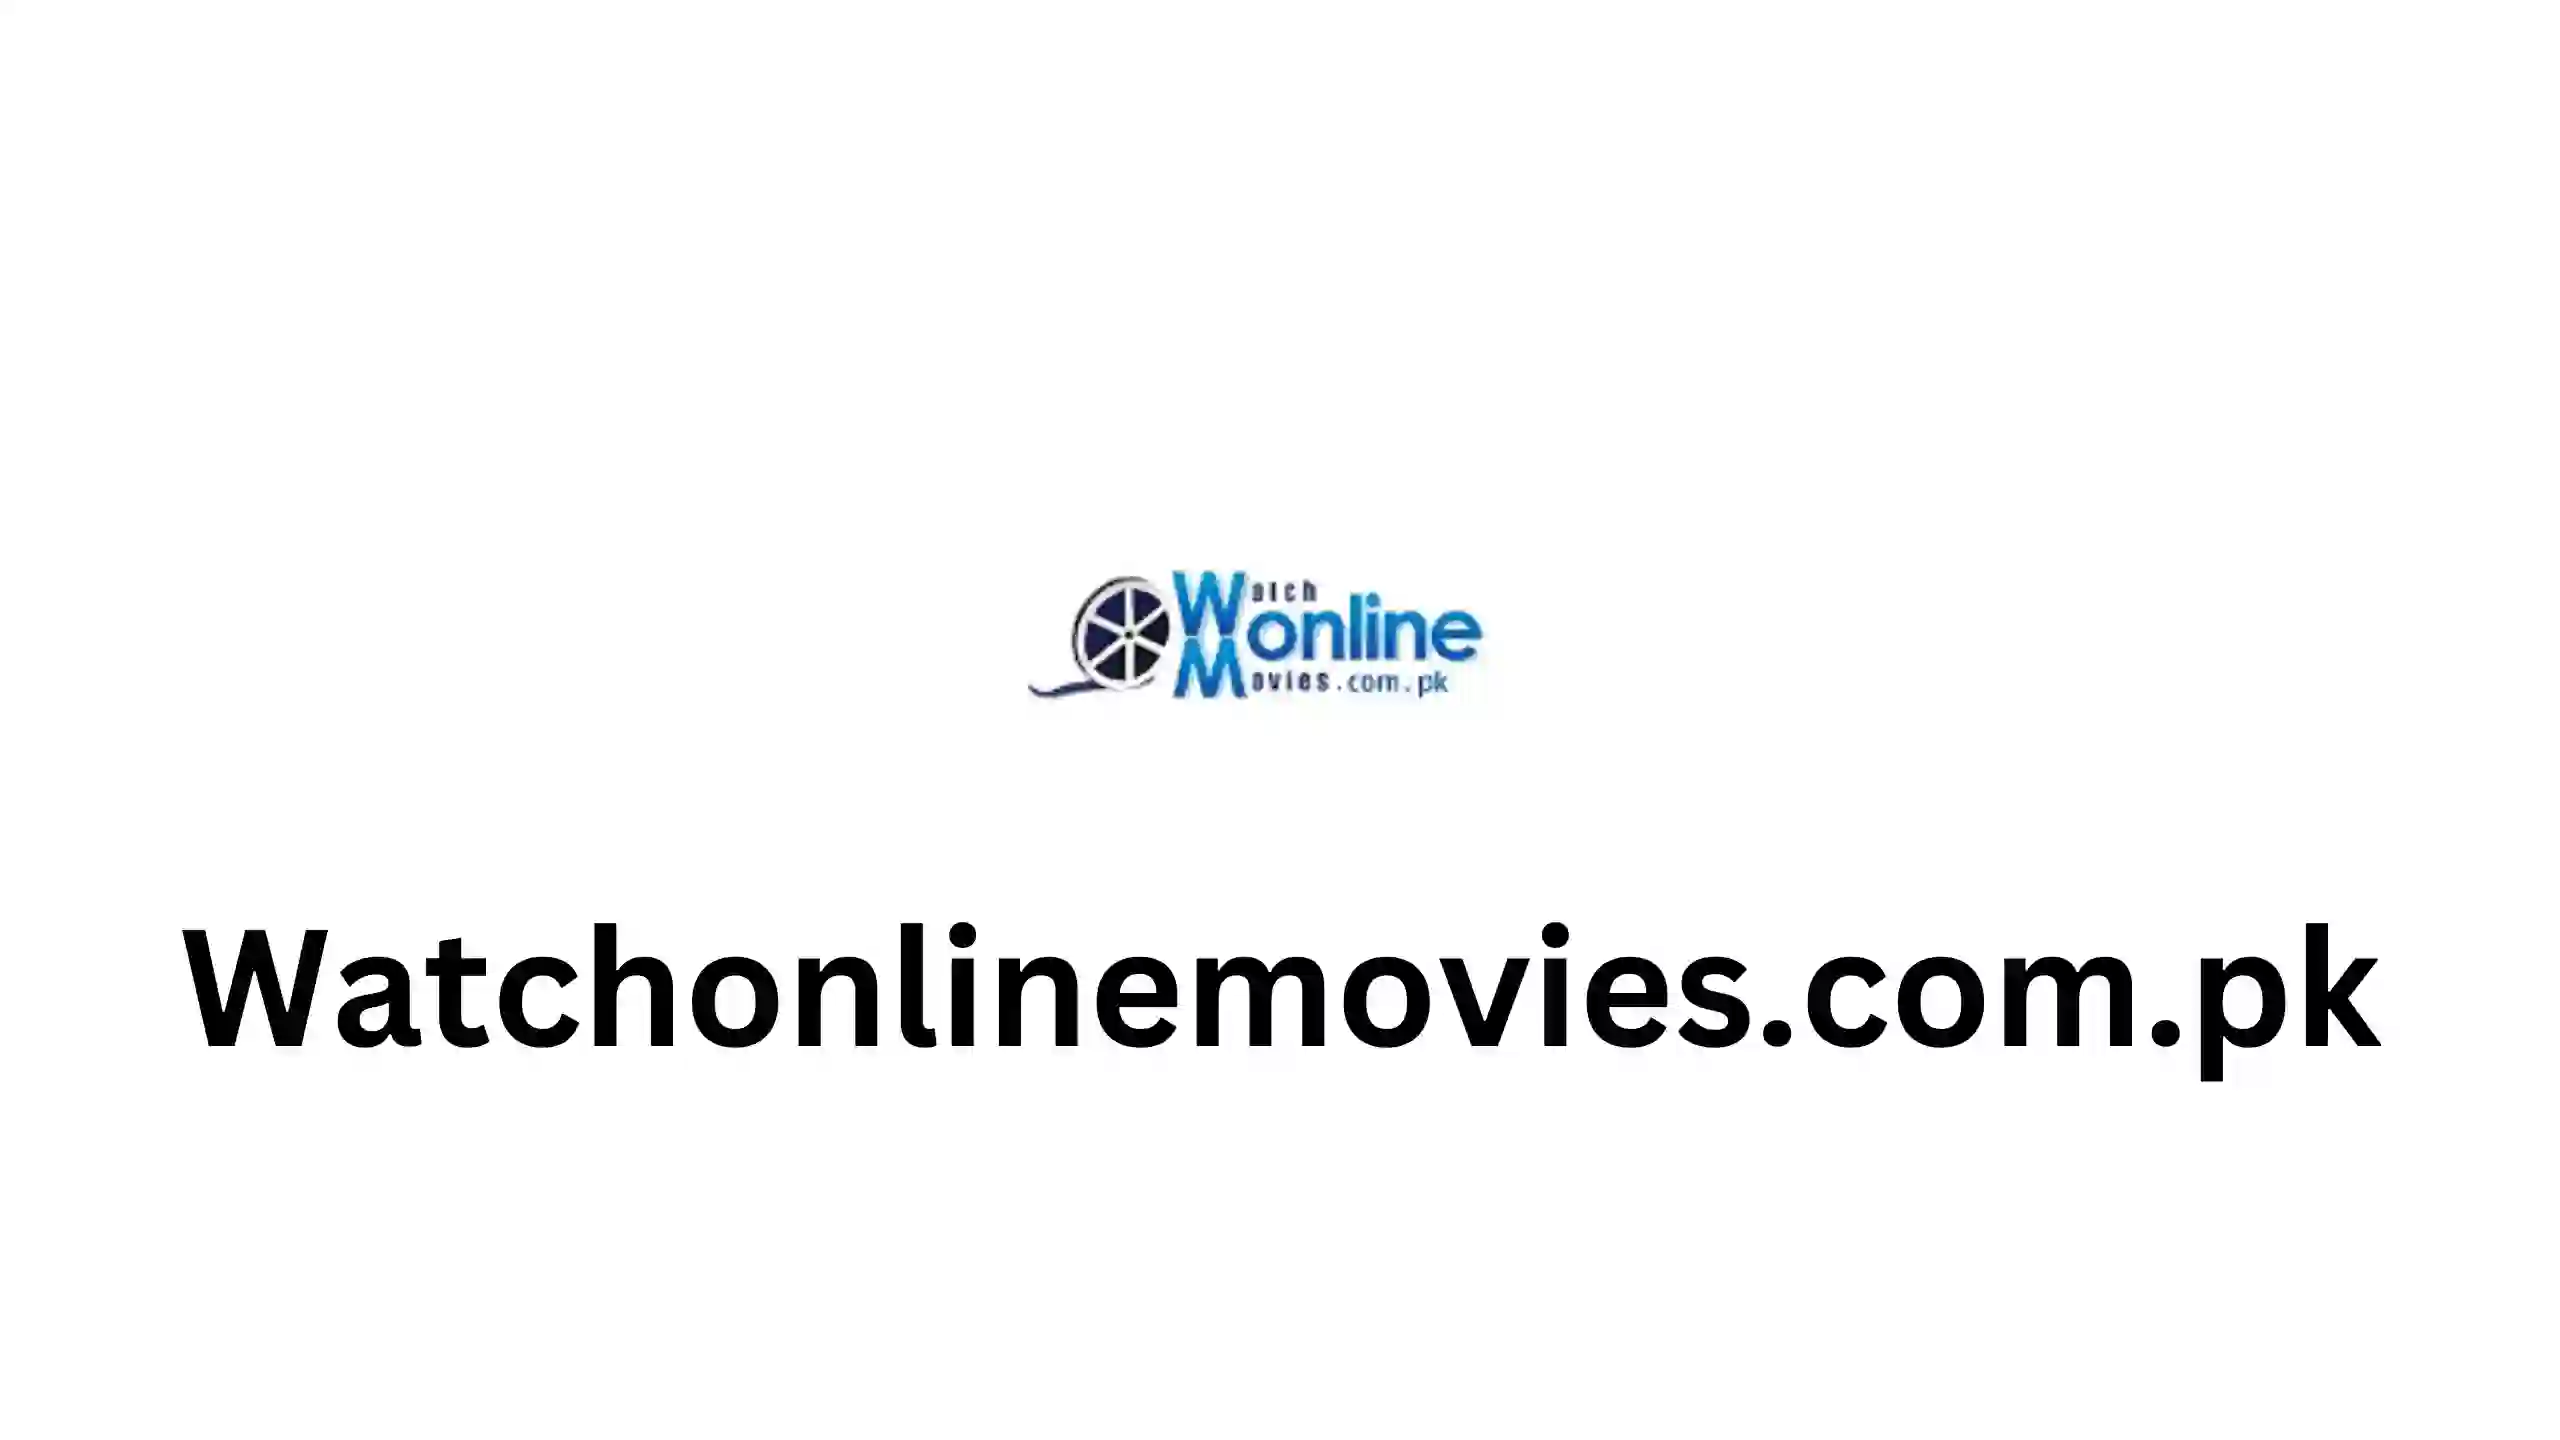 Watchonlinemovies.com.pk